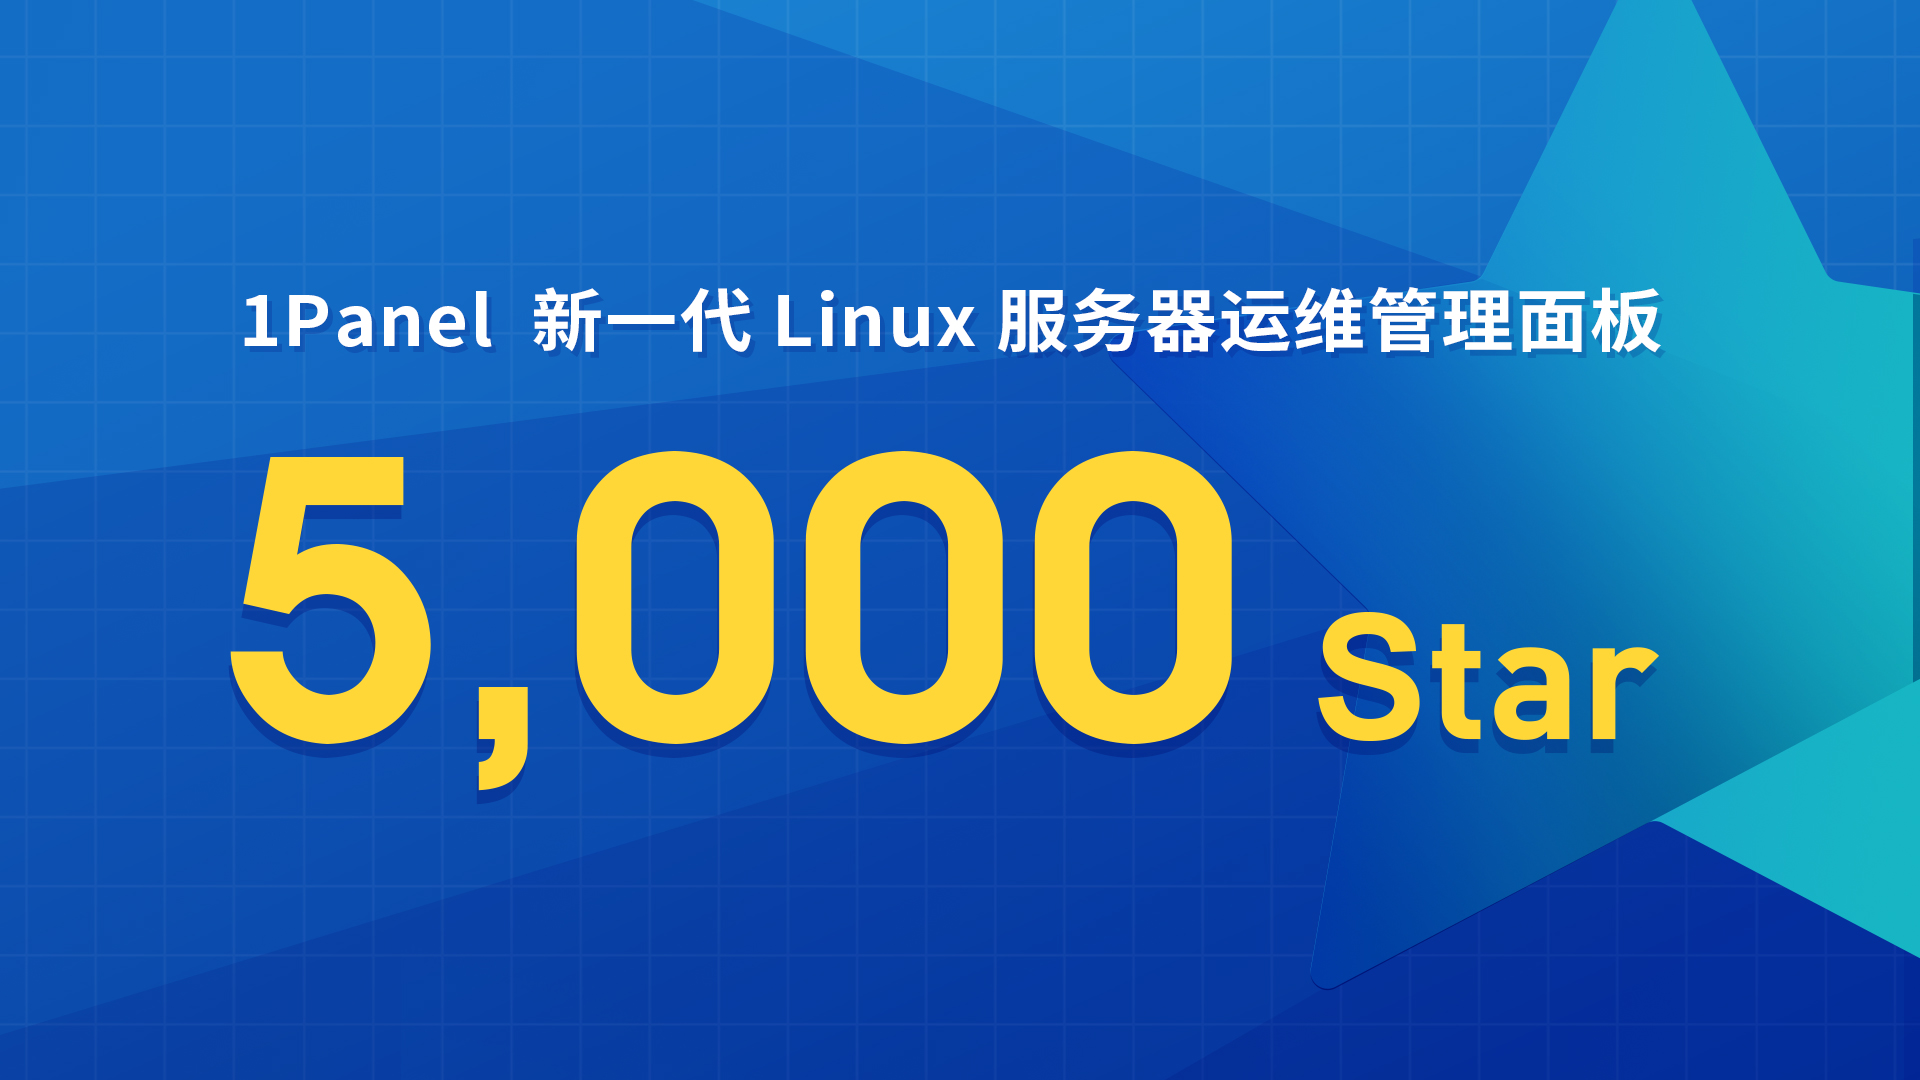 1Panel开源面板项目GitHub Star数量突破5,000！